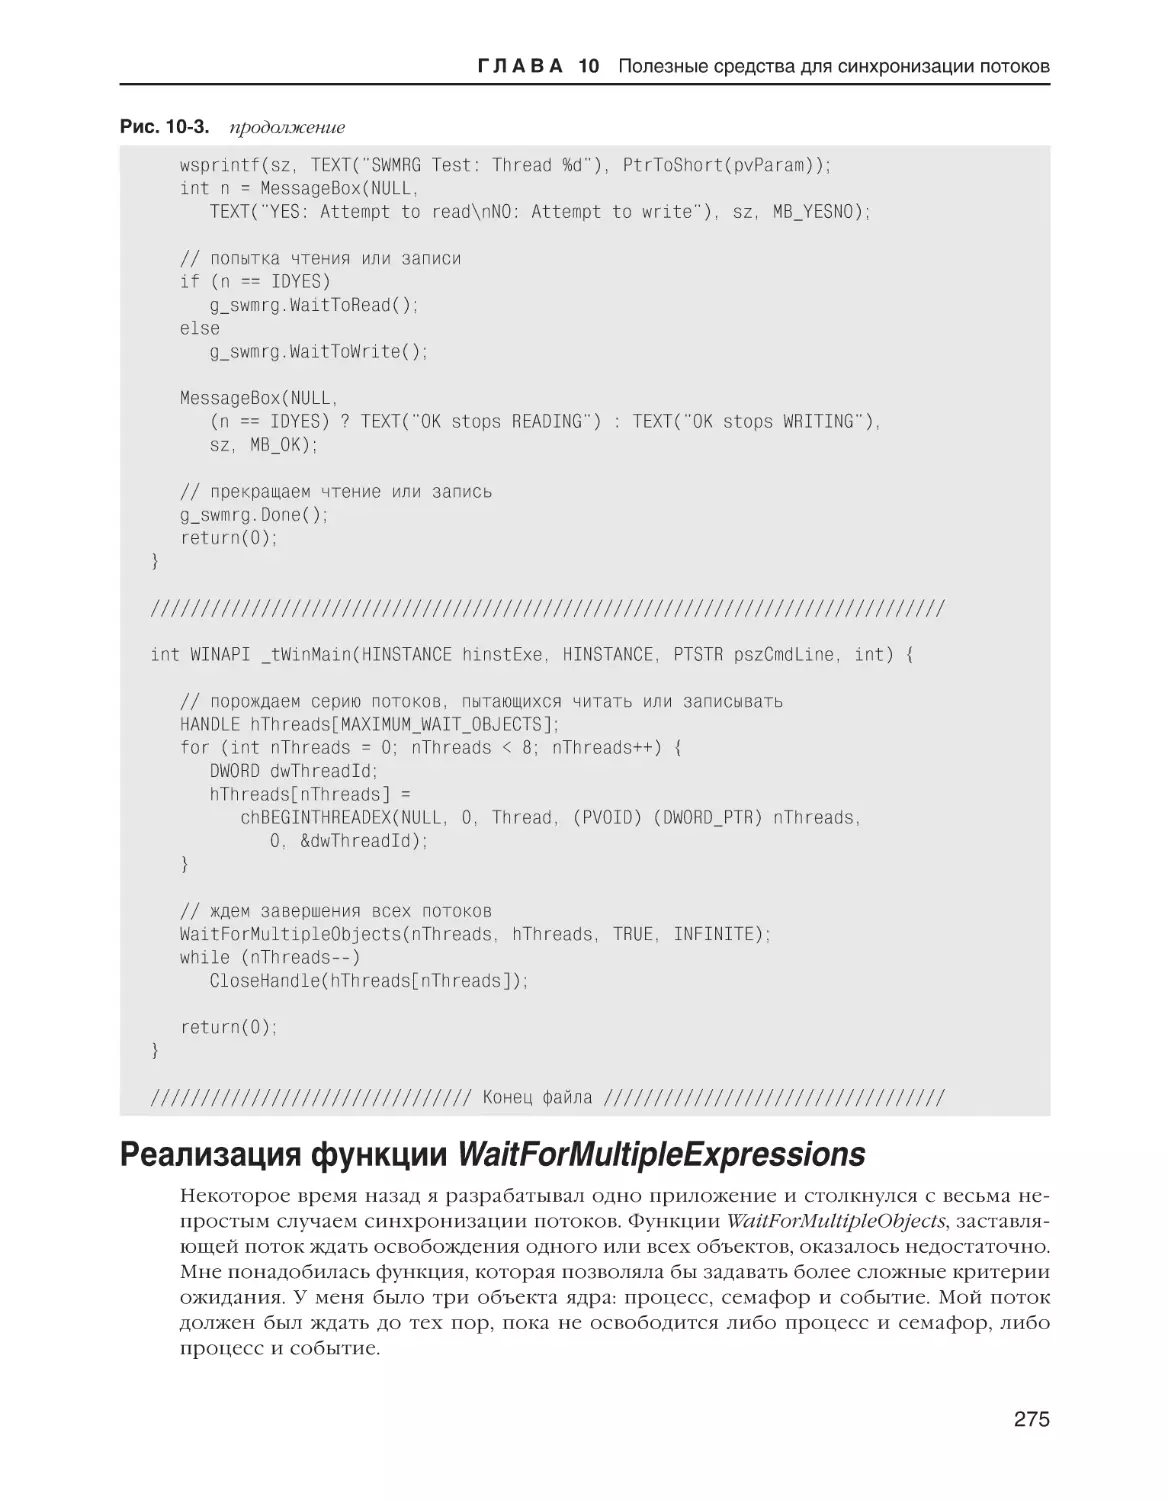 Реализация функции WaitForMultipleExpressions